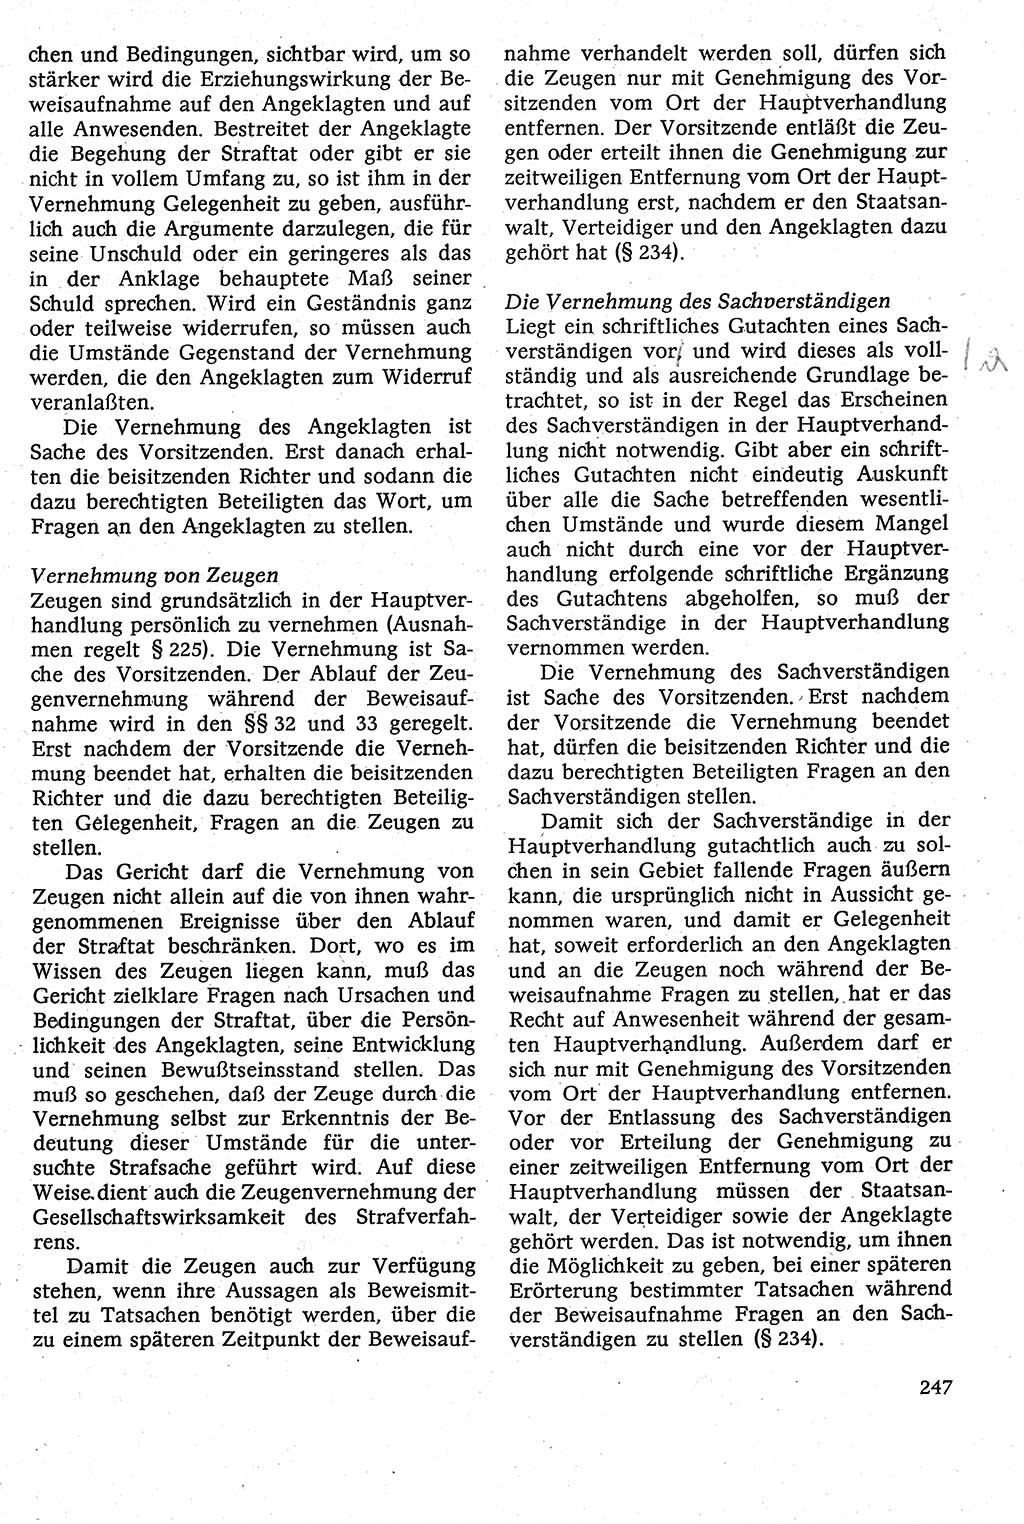 Strafverfahrensrecht [Deutsche Demokratische Republik (DDR)], Lehrbuch 1982, Seite 247 (Strafverf.-R. DDR Lb. 1982, S. 247)